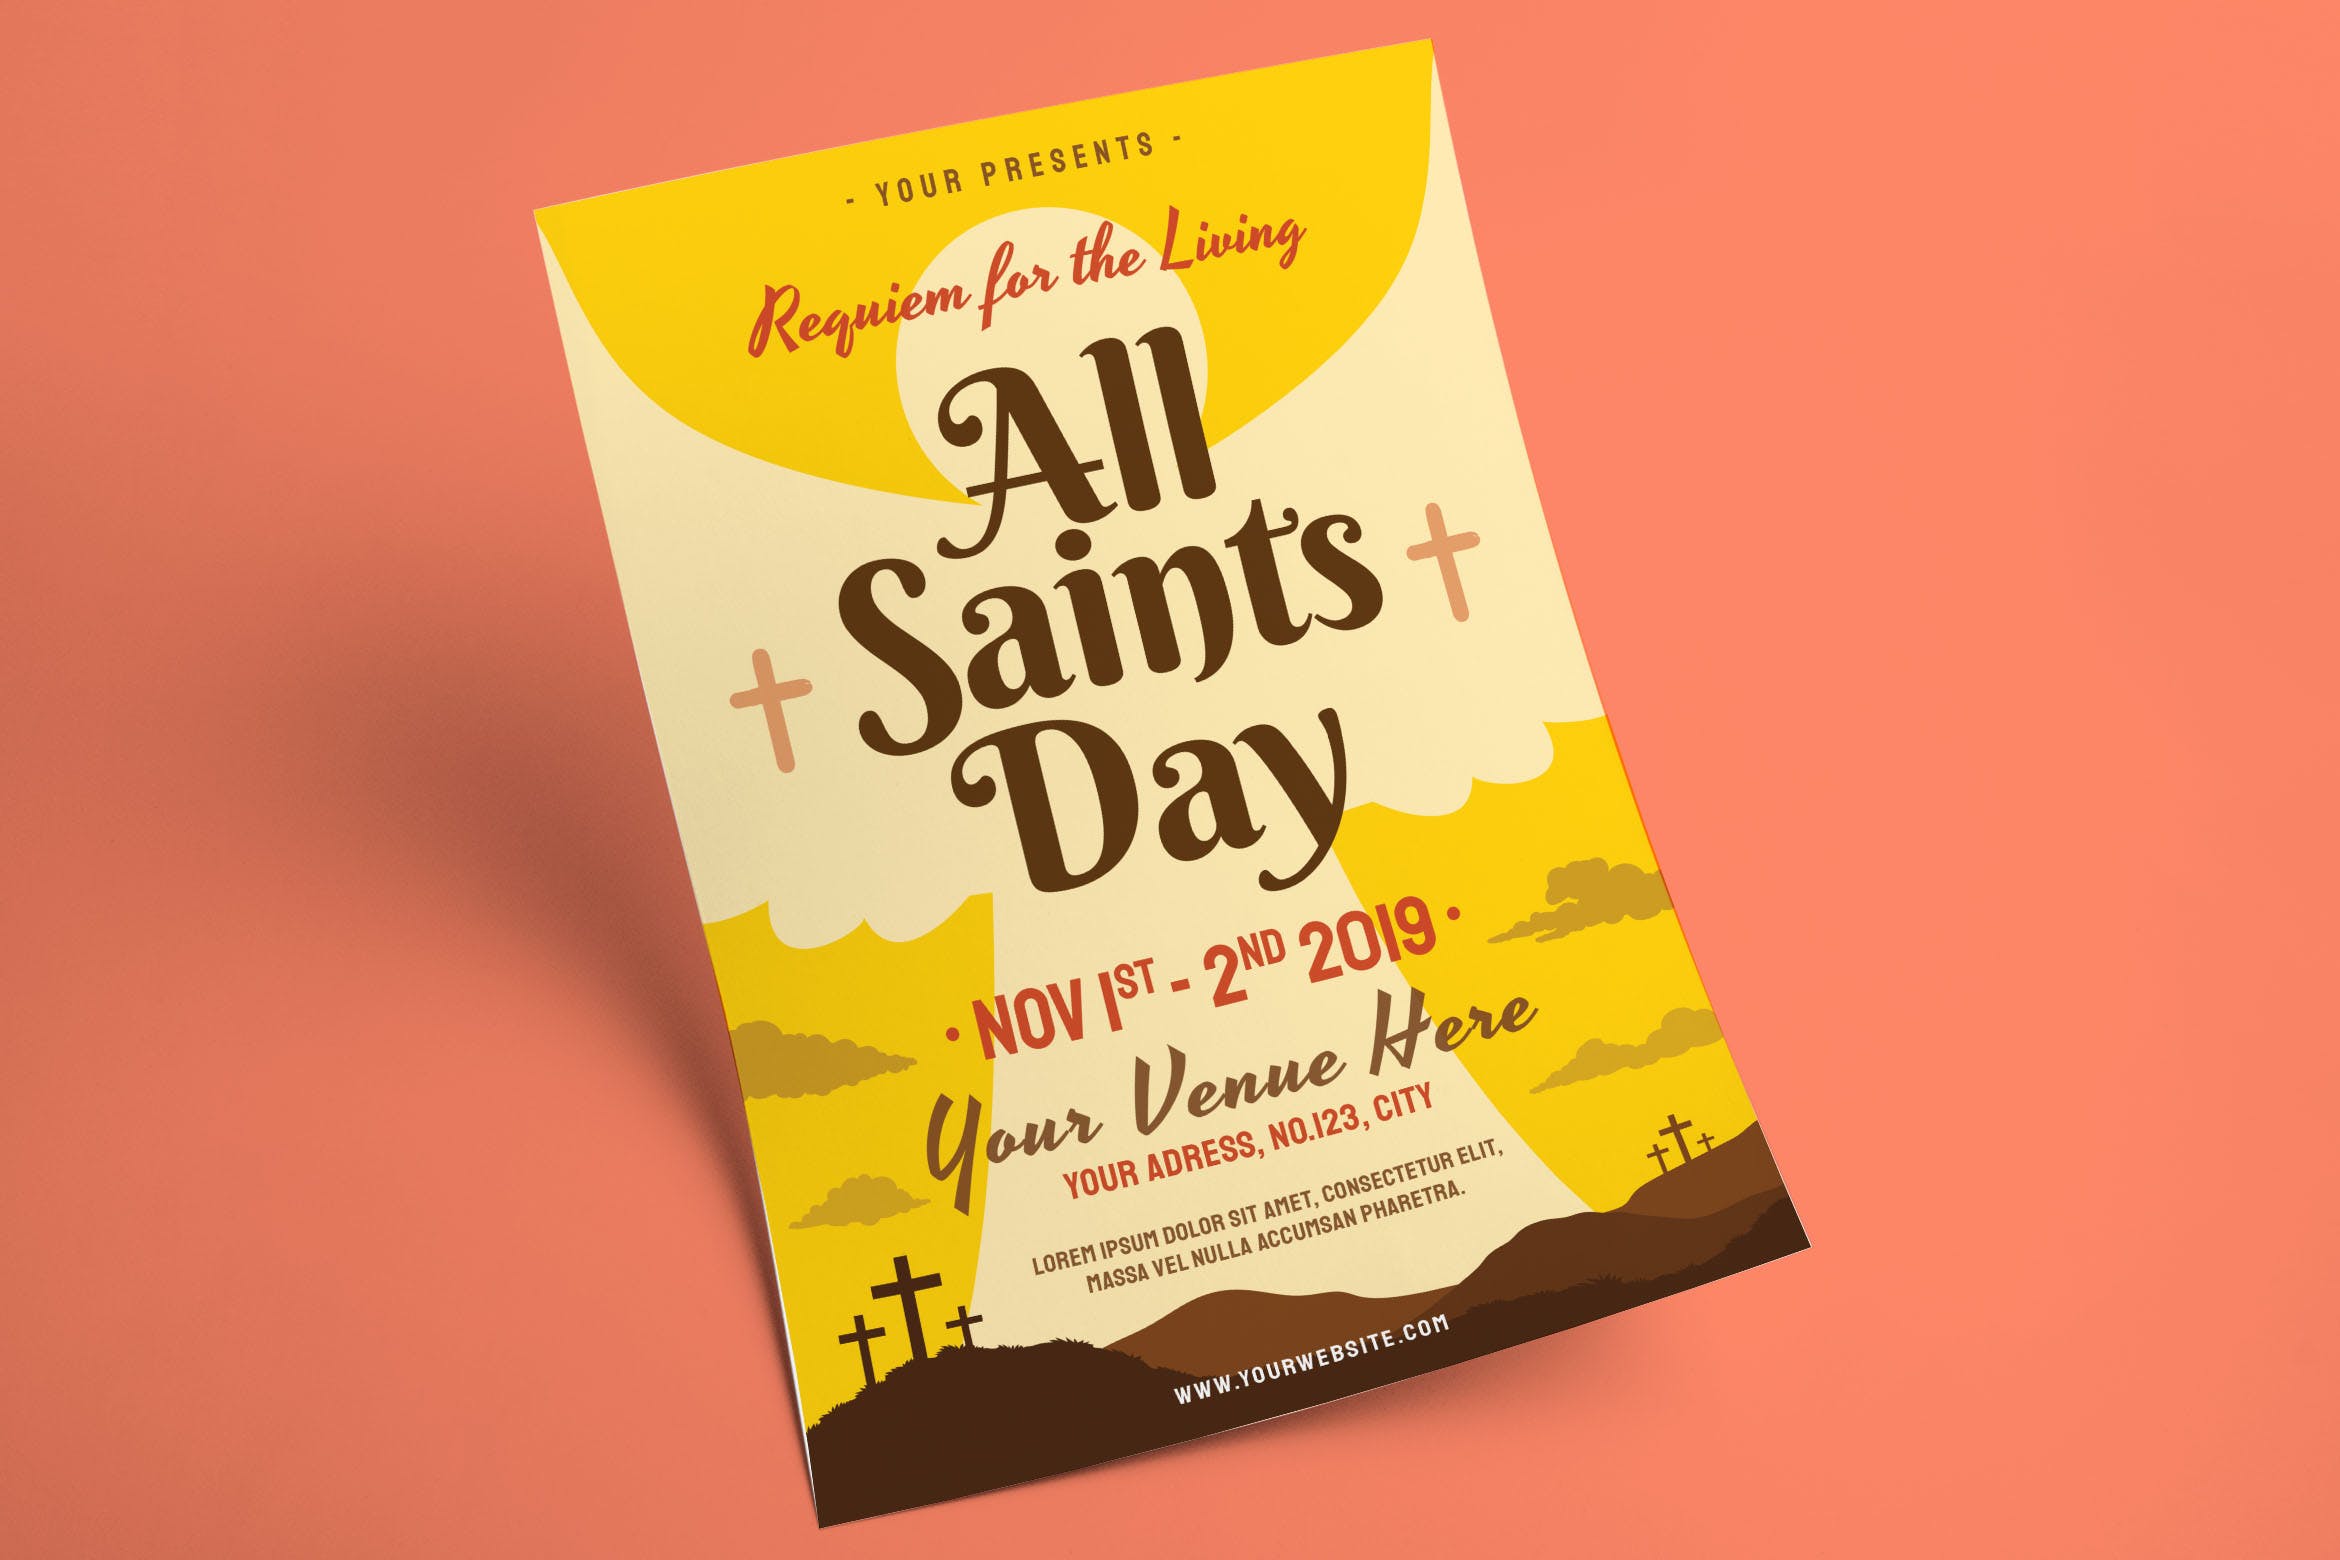 诸圣日活动传单海报PSD素材素材库精选模板 All Saints Day Flyer插图